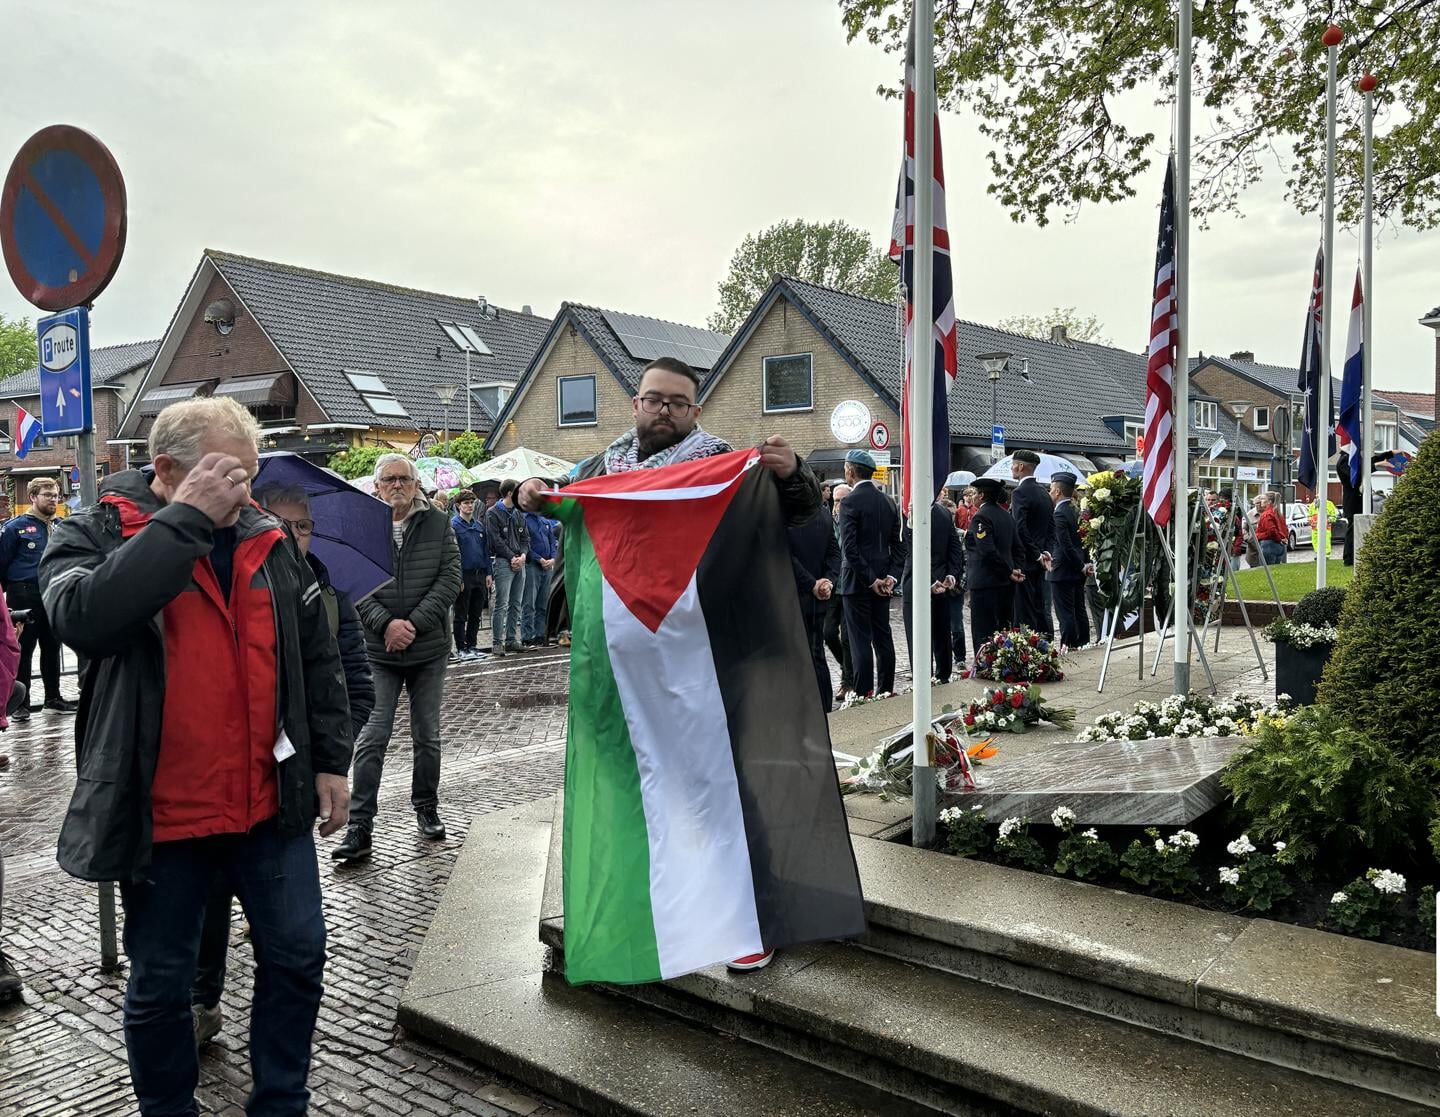 Richting het einde van de herdenking liet een man de Palestina vlag zien.